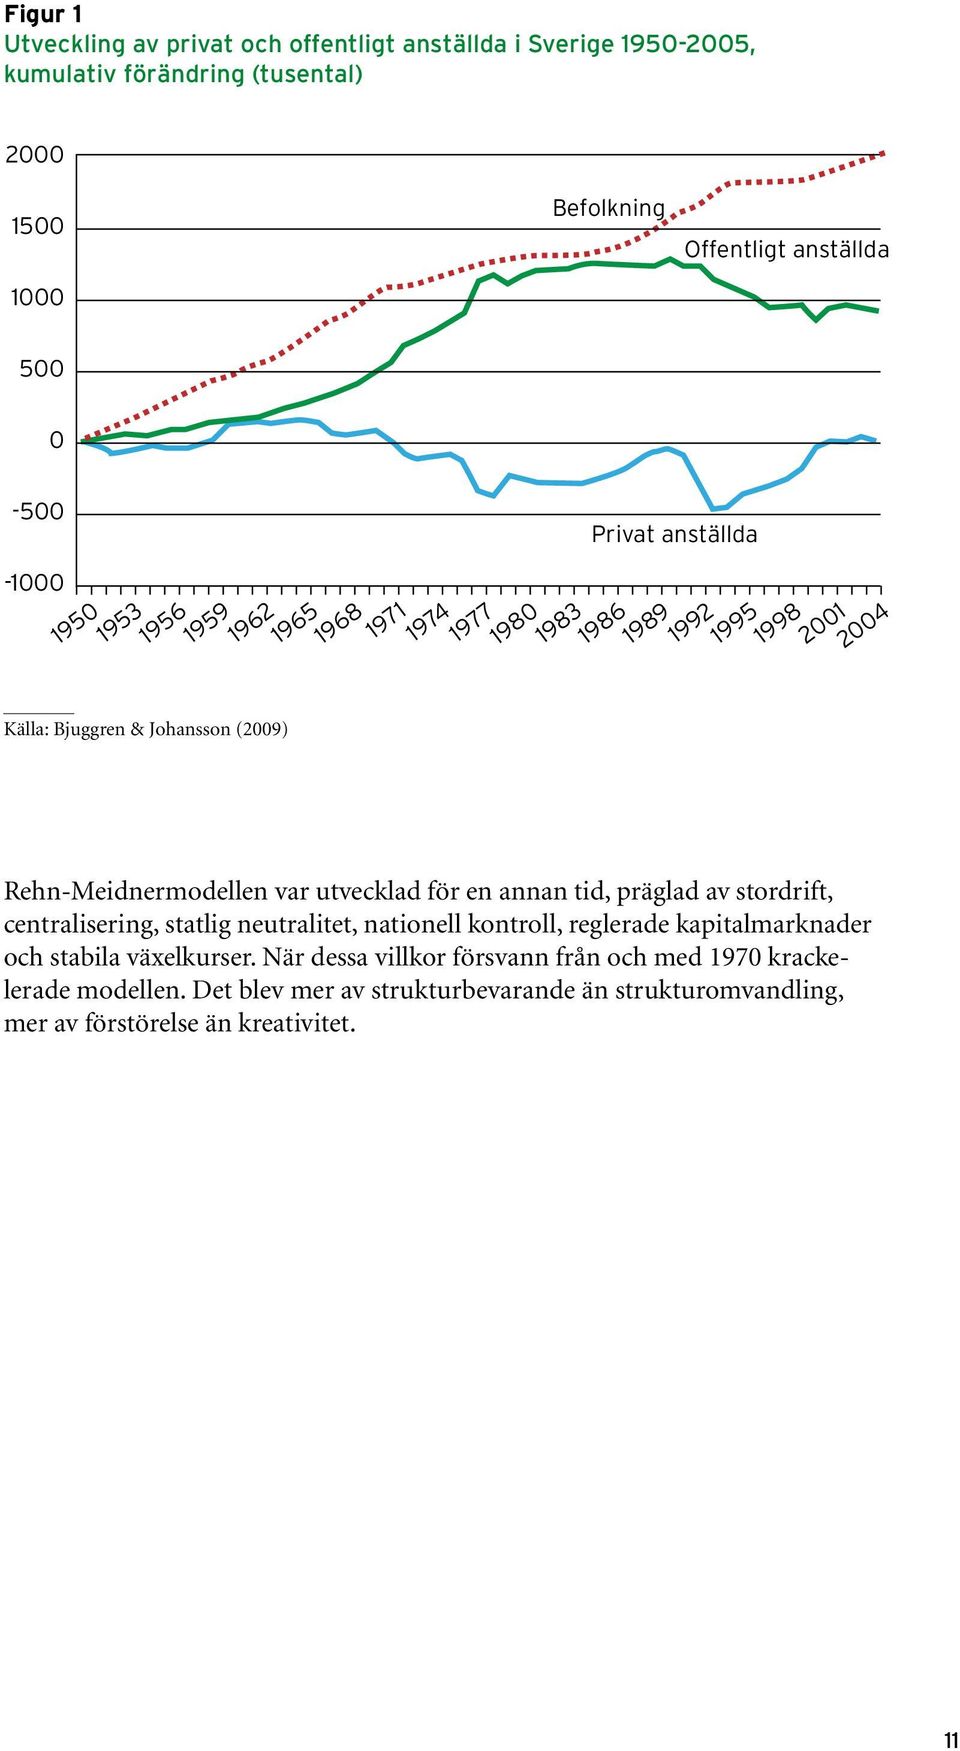 Rehn-Meidnermodellen var utvecklad för en annan tid, präglad av stordrift, centralisering, statlig neutralitet, nationell kontroll, reglerade kapitalmarknader och